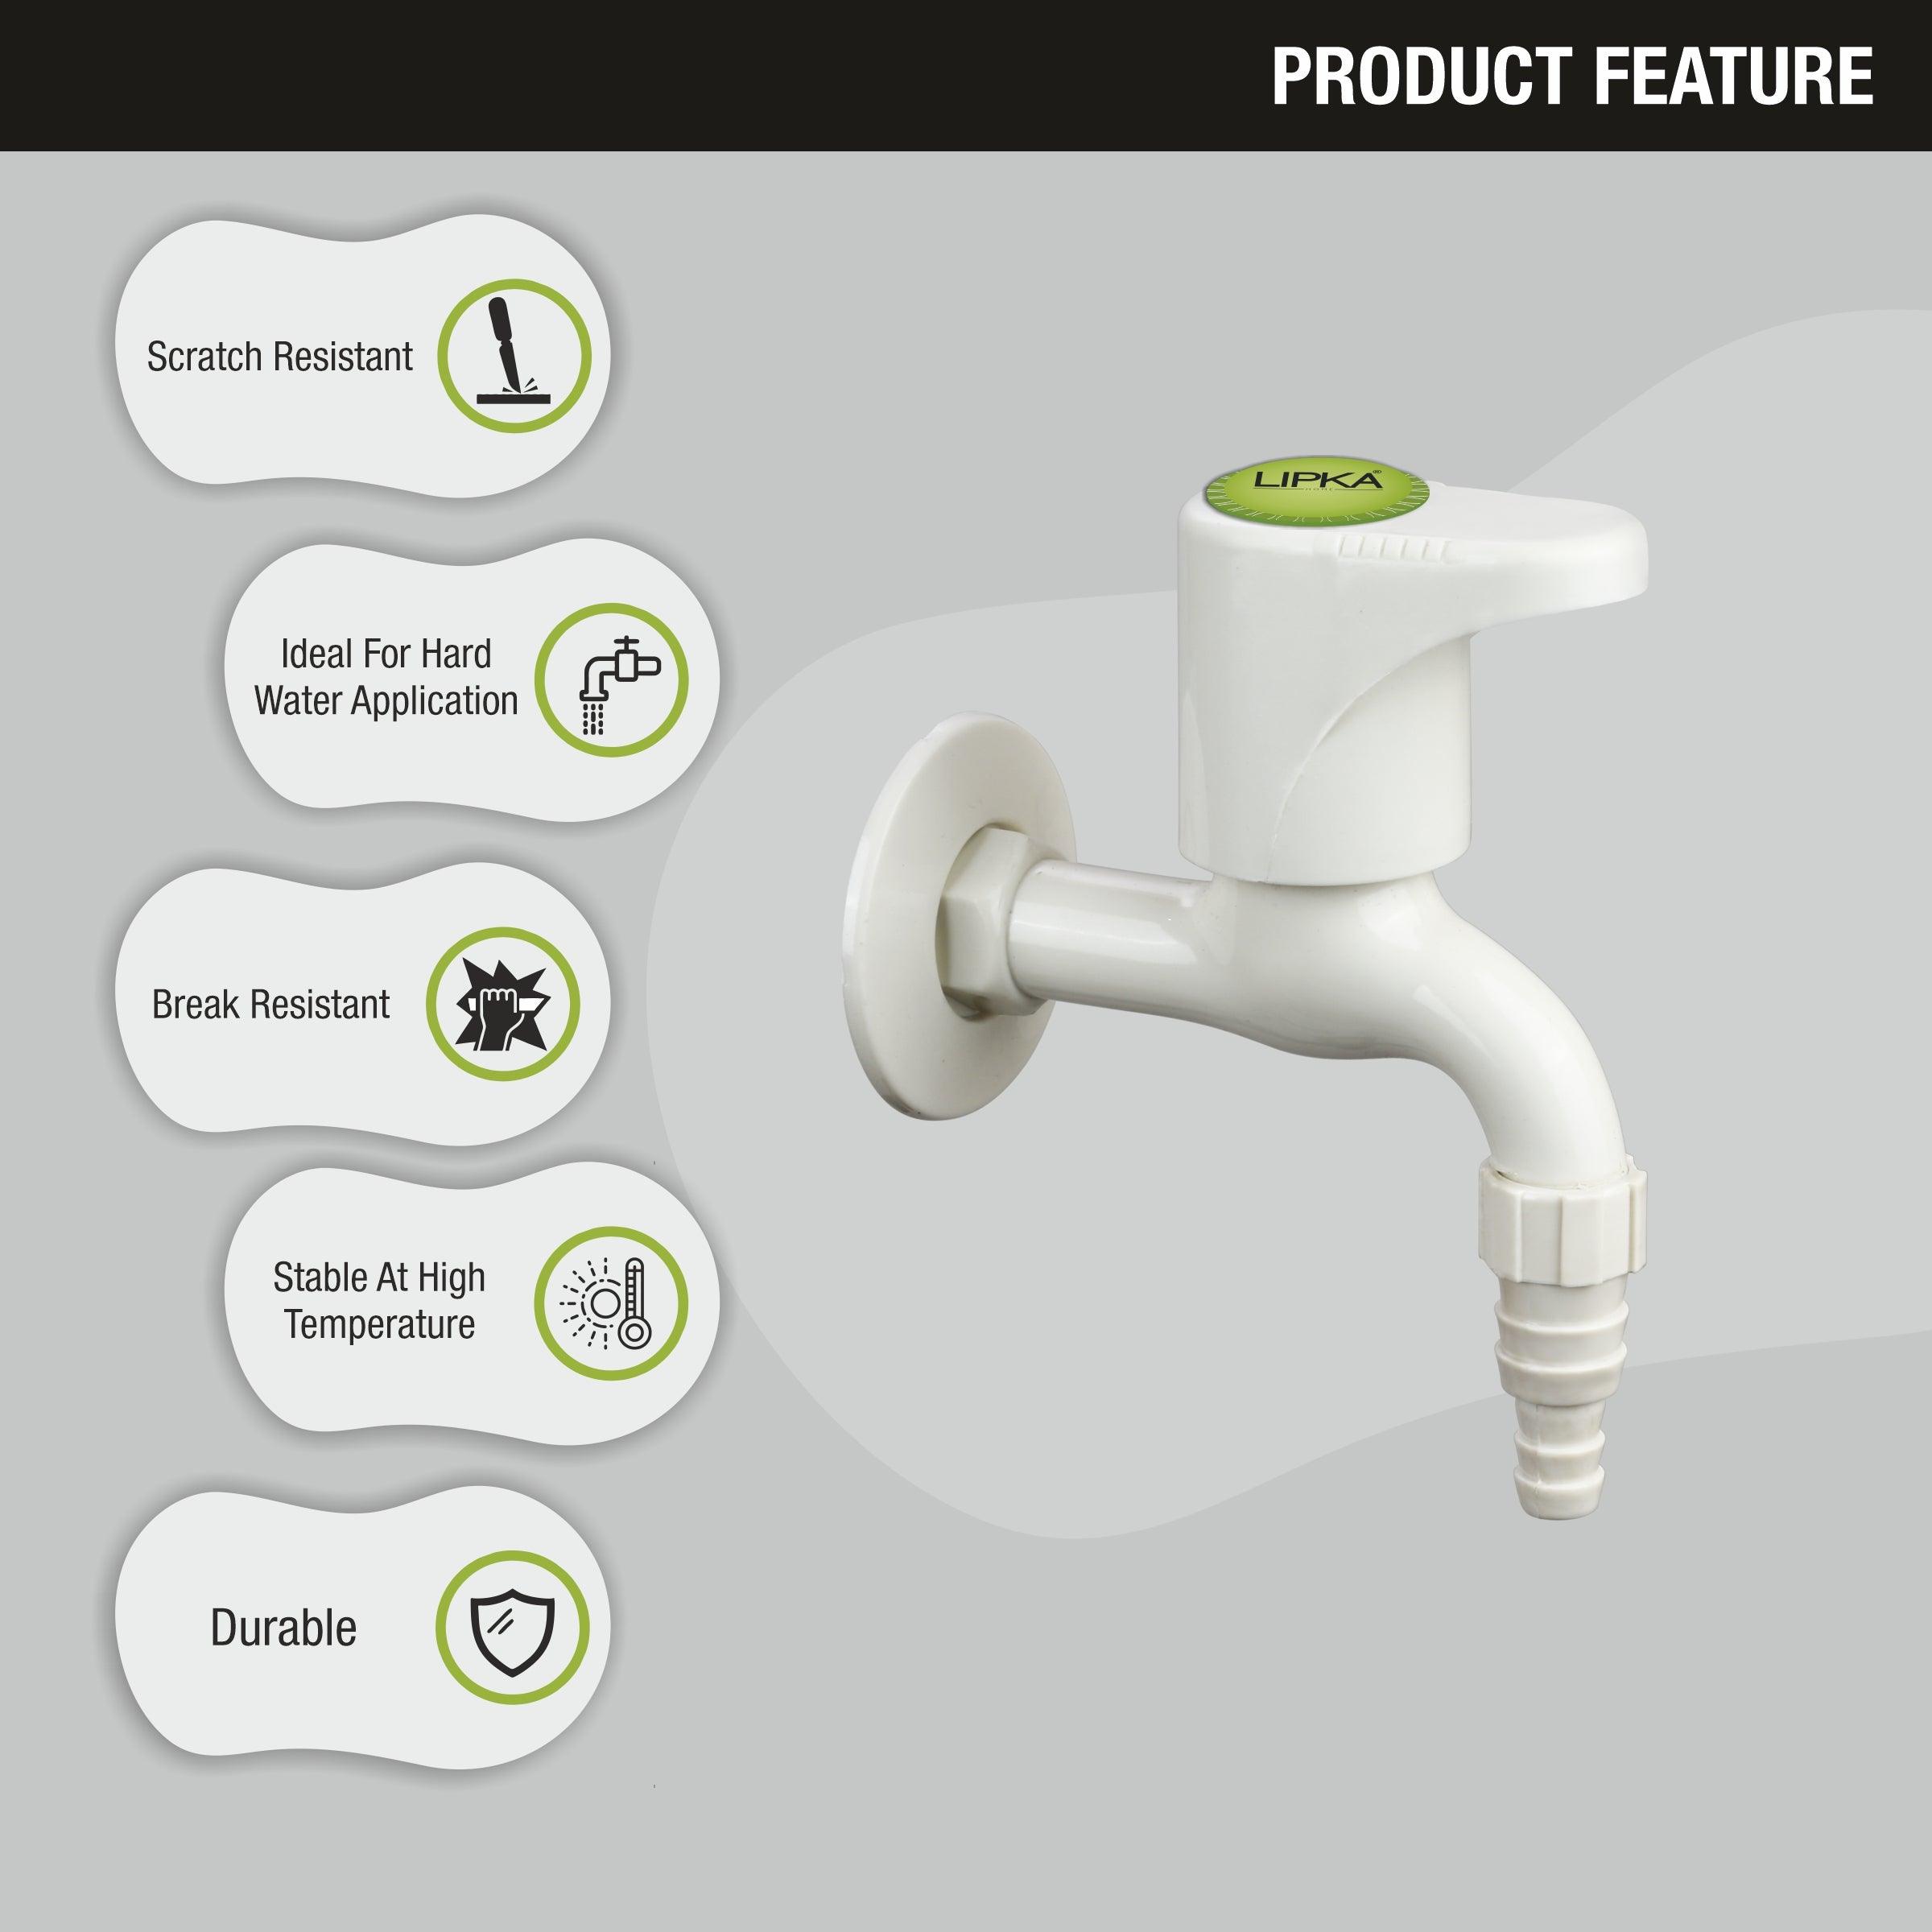 Designo Nozzle Bib Tap PTMT Faucet features